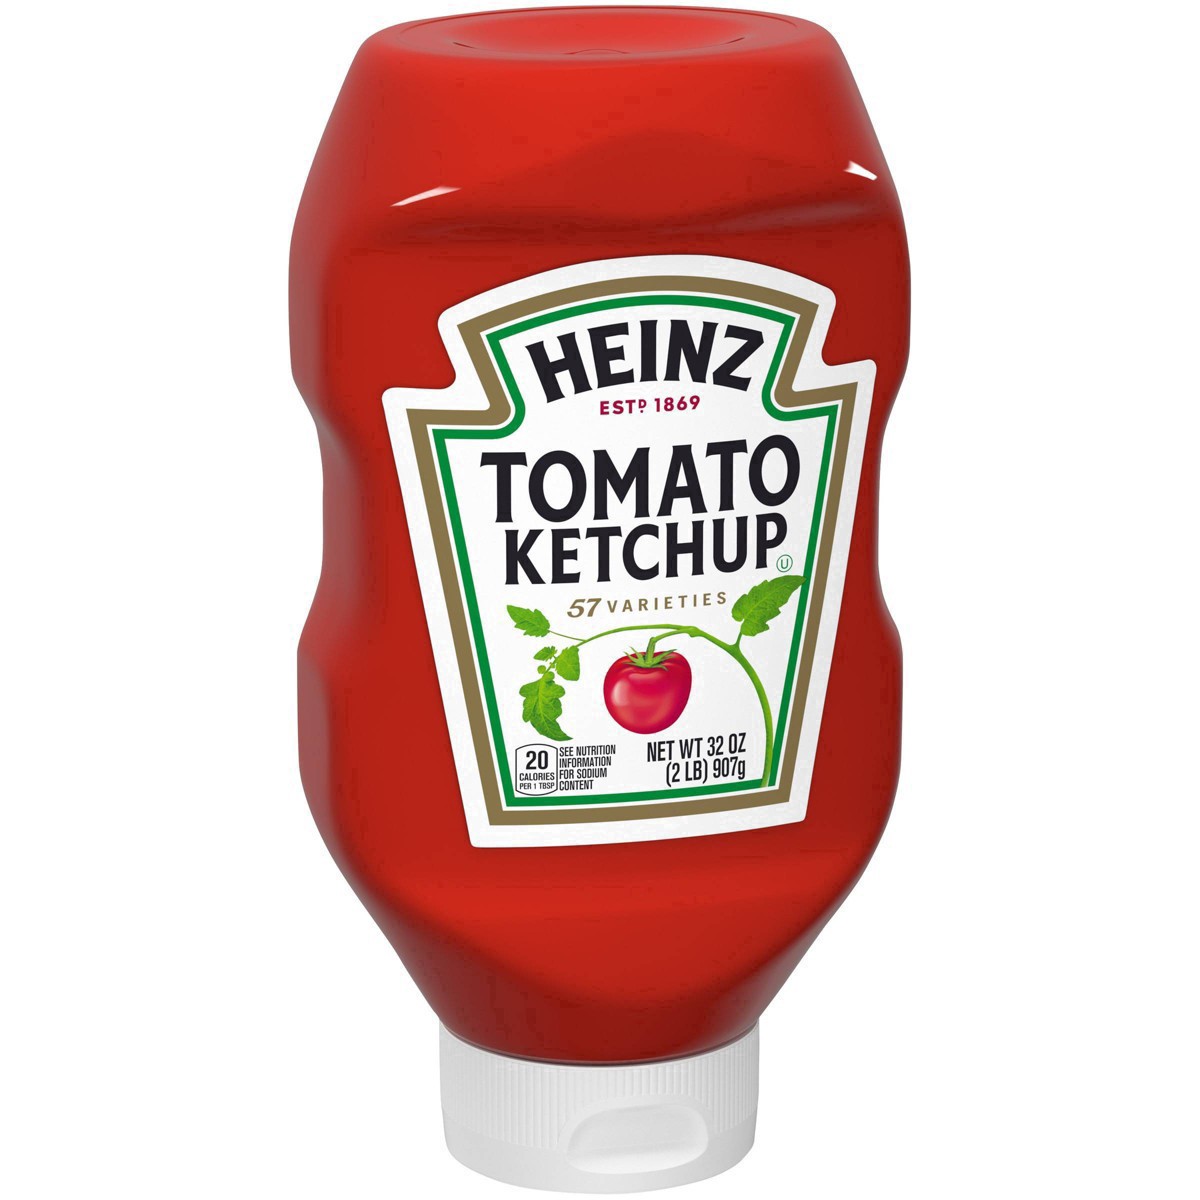 slide 5 of 86, Heinz Tomato Ketchup Bottle, 32 oz